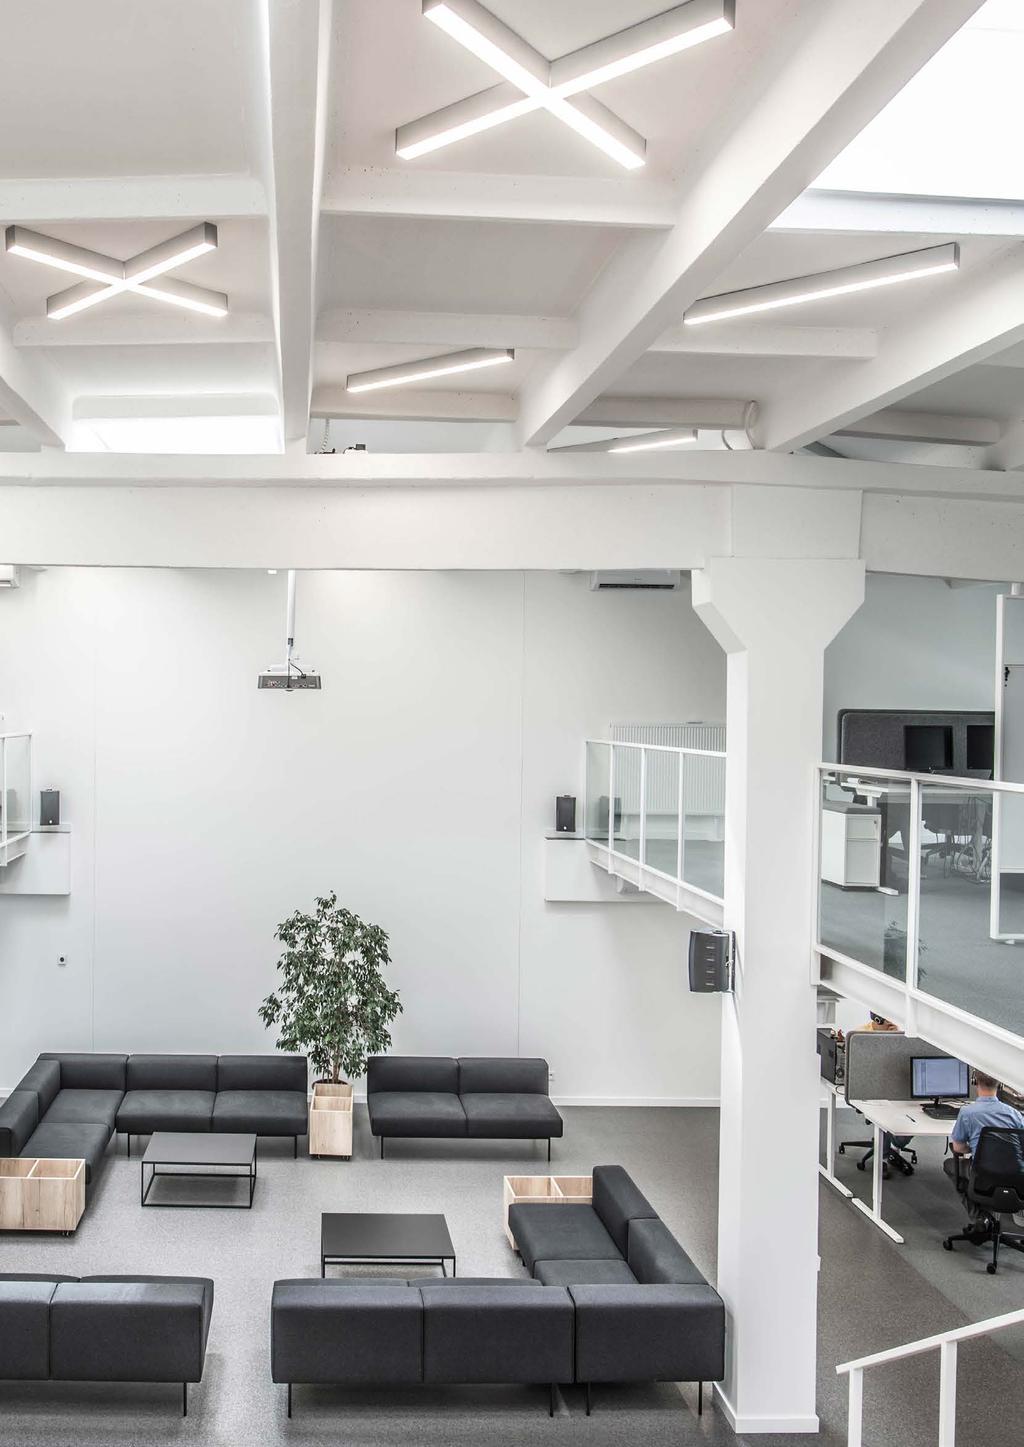 Sterowanie oświetleniem w salach konferencyjnych i powierzchniach biurowych: umożliwia utrzymanie stałego natężenia oświetlenia we wnętrzu, uwzględniając poziom natężenia oświetlenia naturalnego